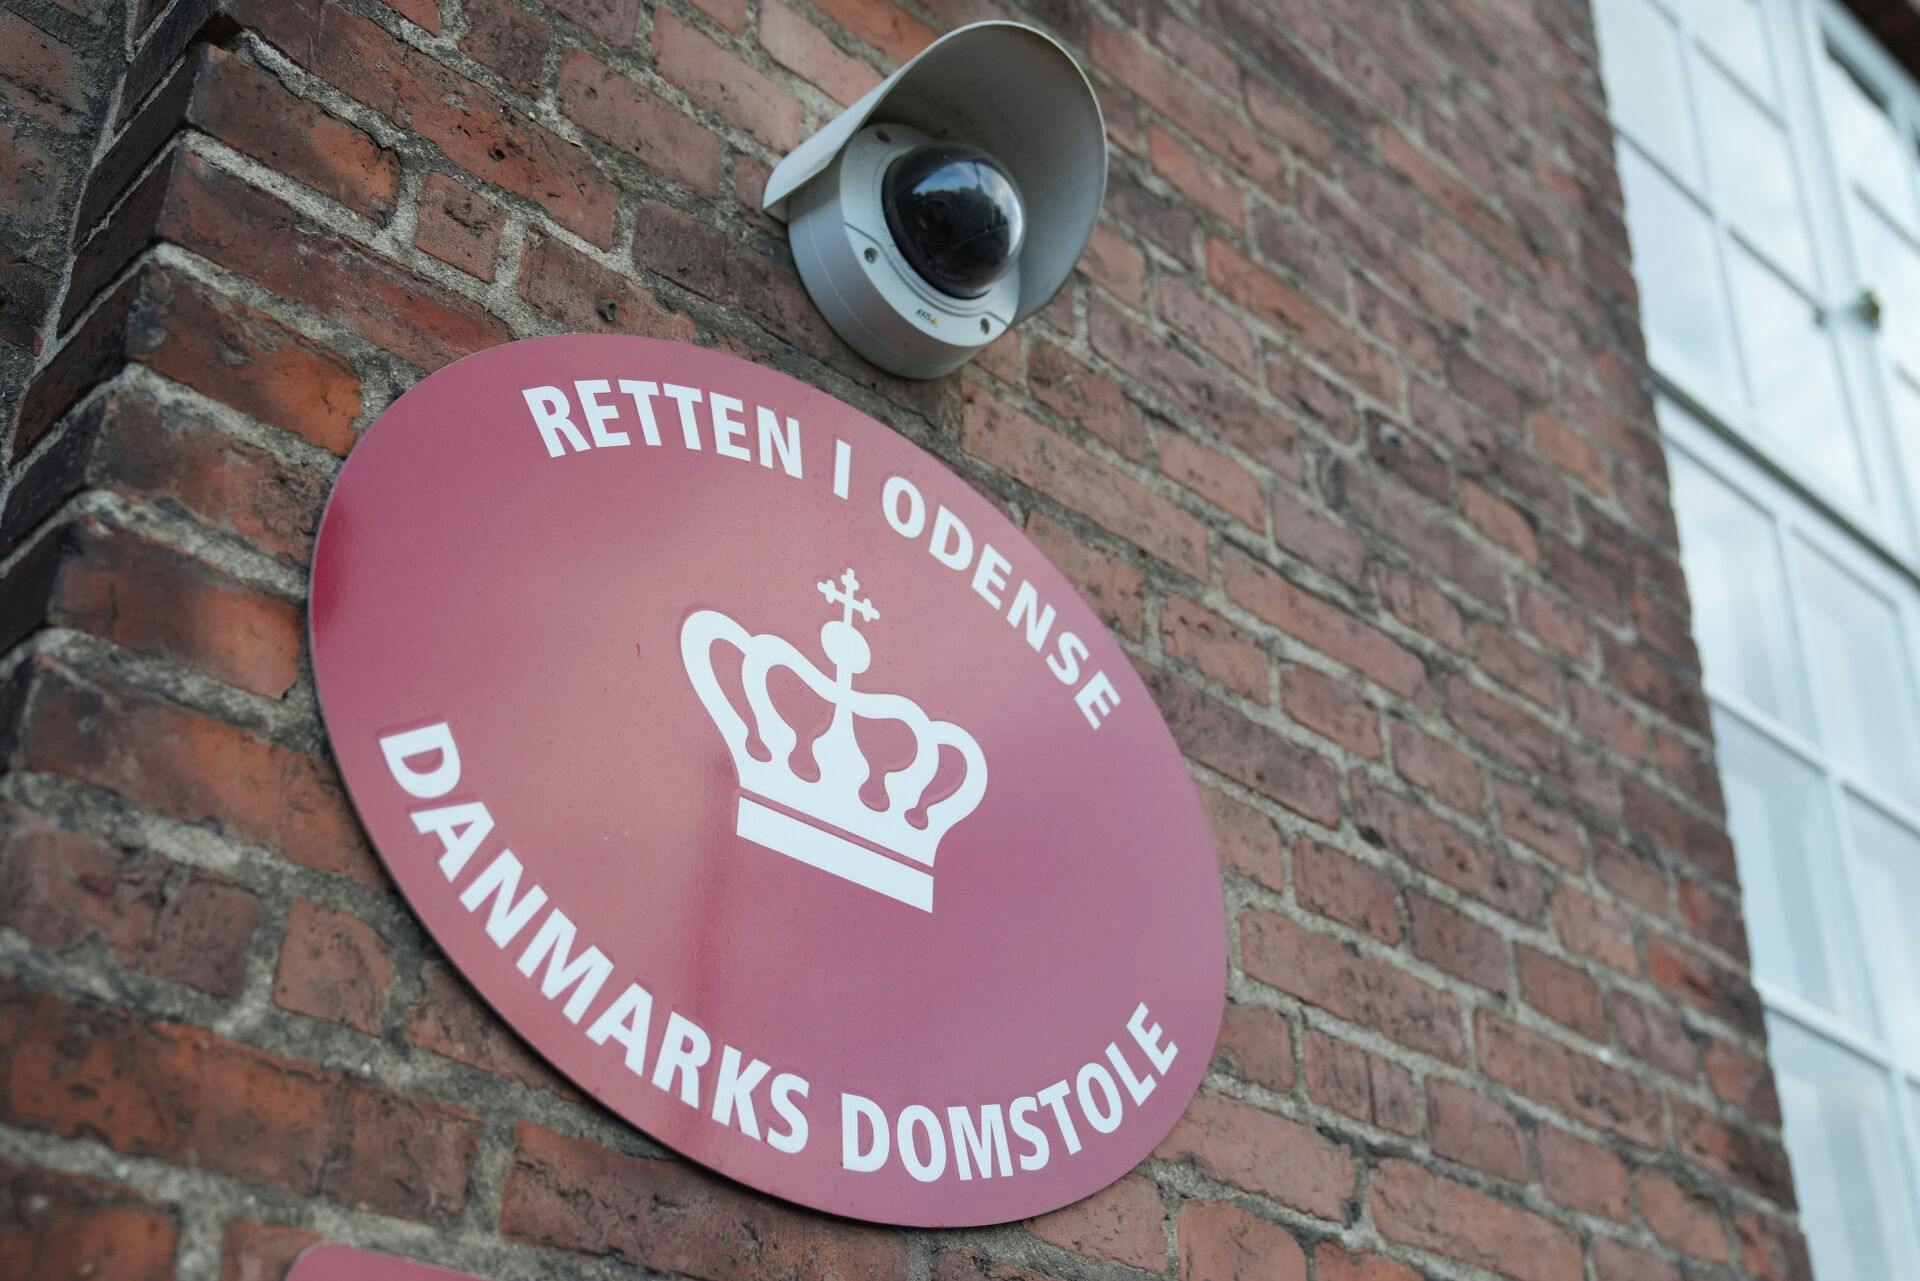 Retten i Odense har mandag afsagt dom i en alvorlig sag.